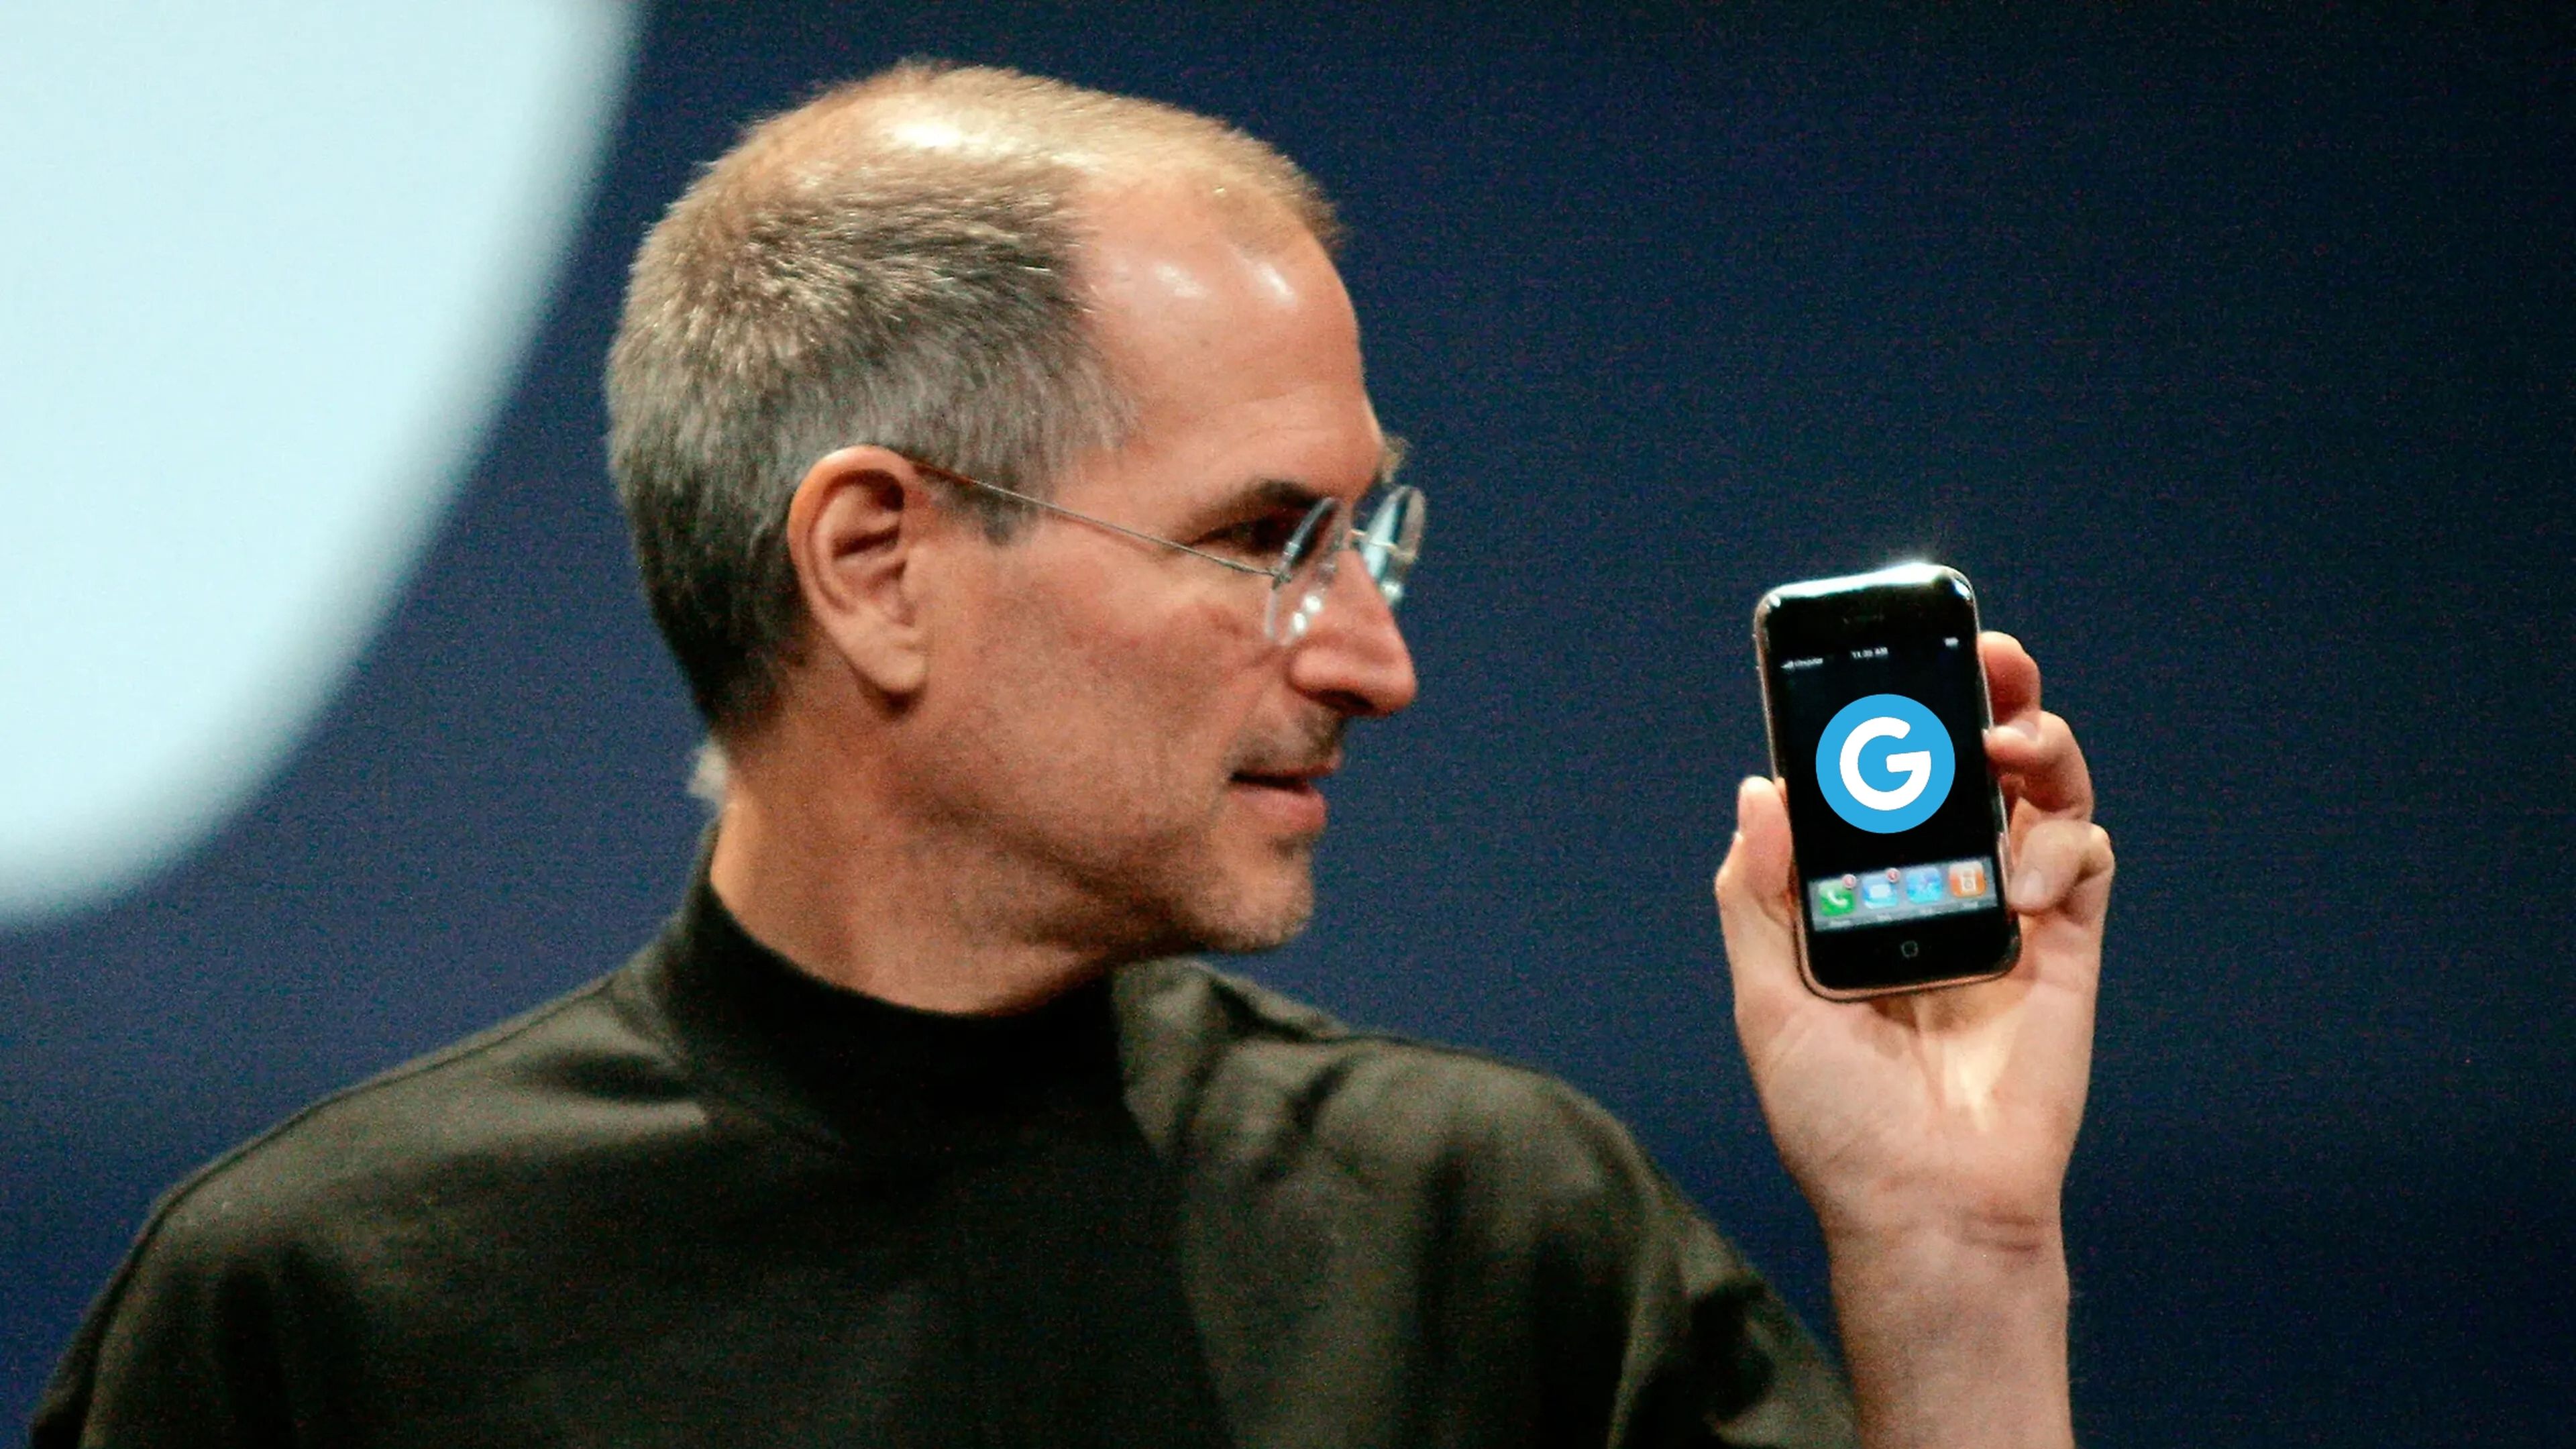 La curiosa historia de cuándo Steve Jobs llamó a Google para que corrigiera su logo en el iPhone